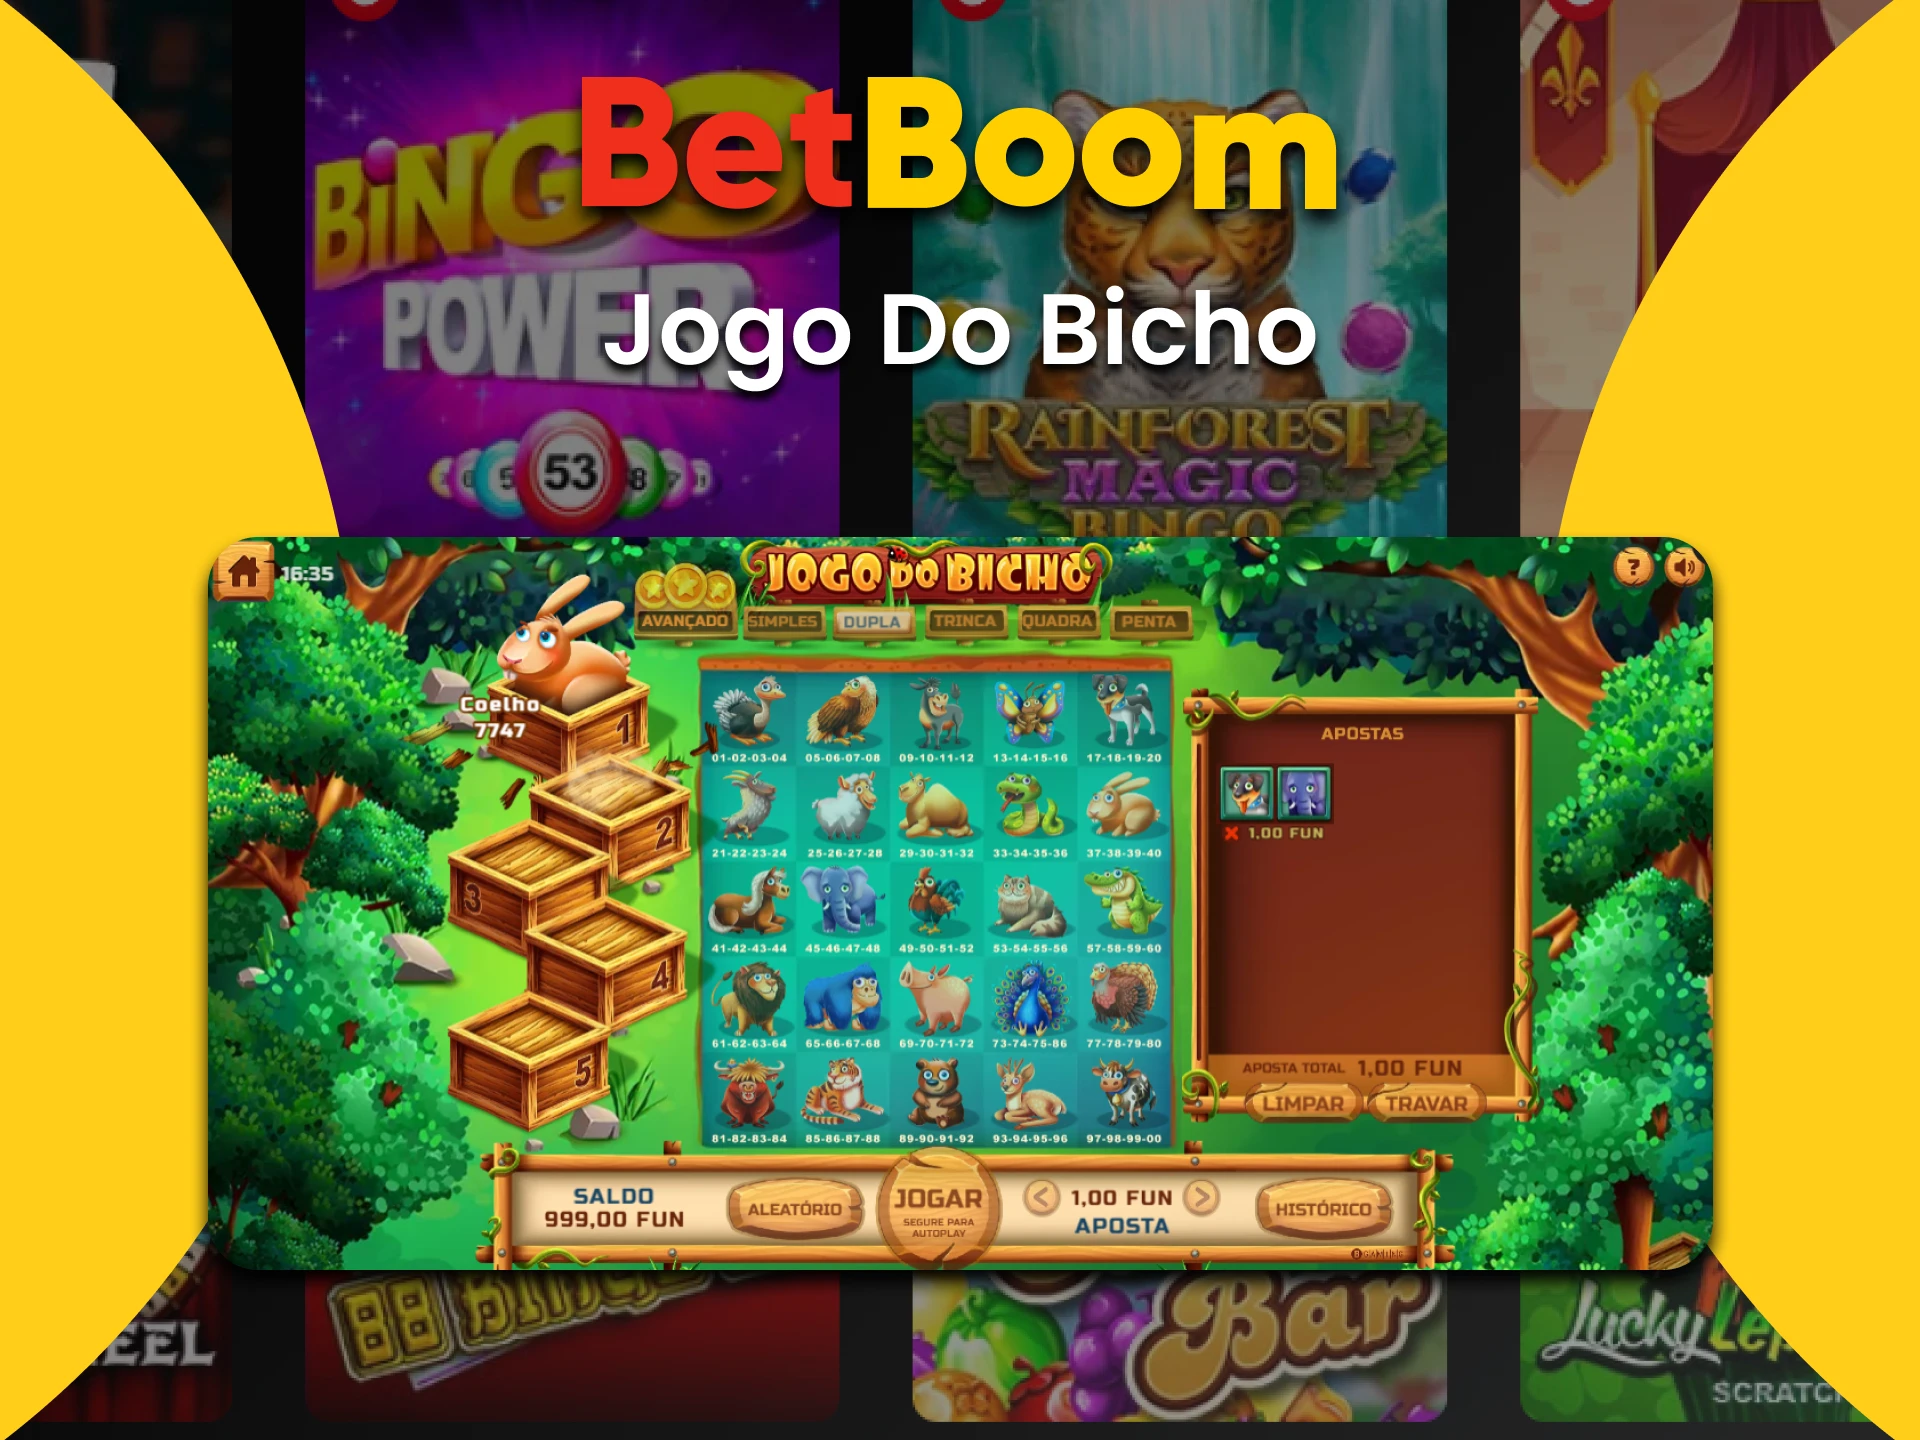 Vá para a seção Bingo do BetBoom para jogar Jogo Do Bicho.